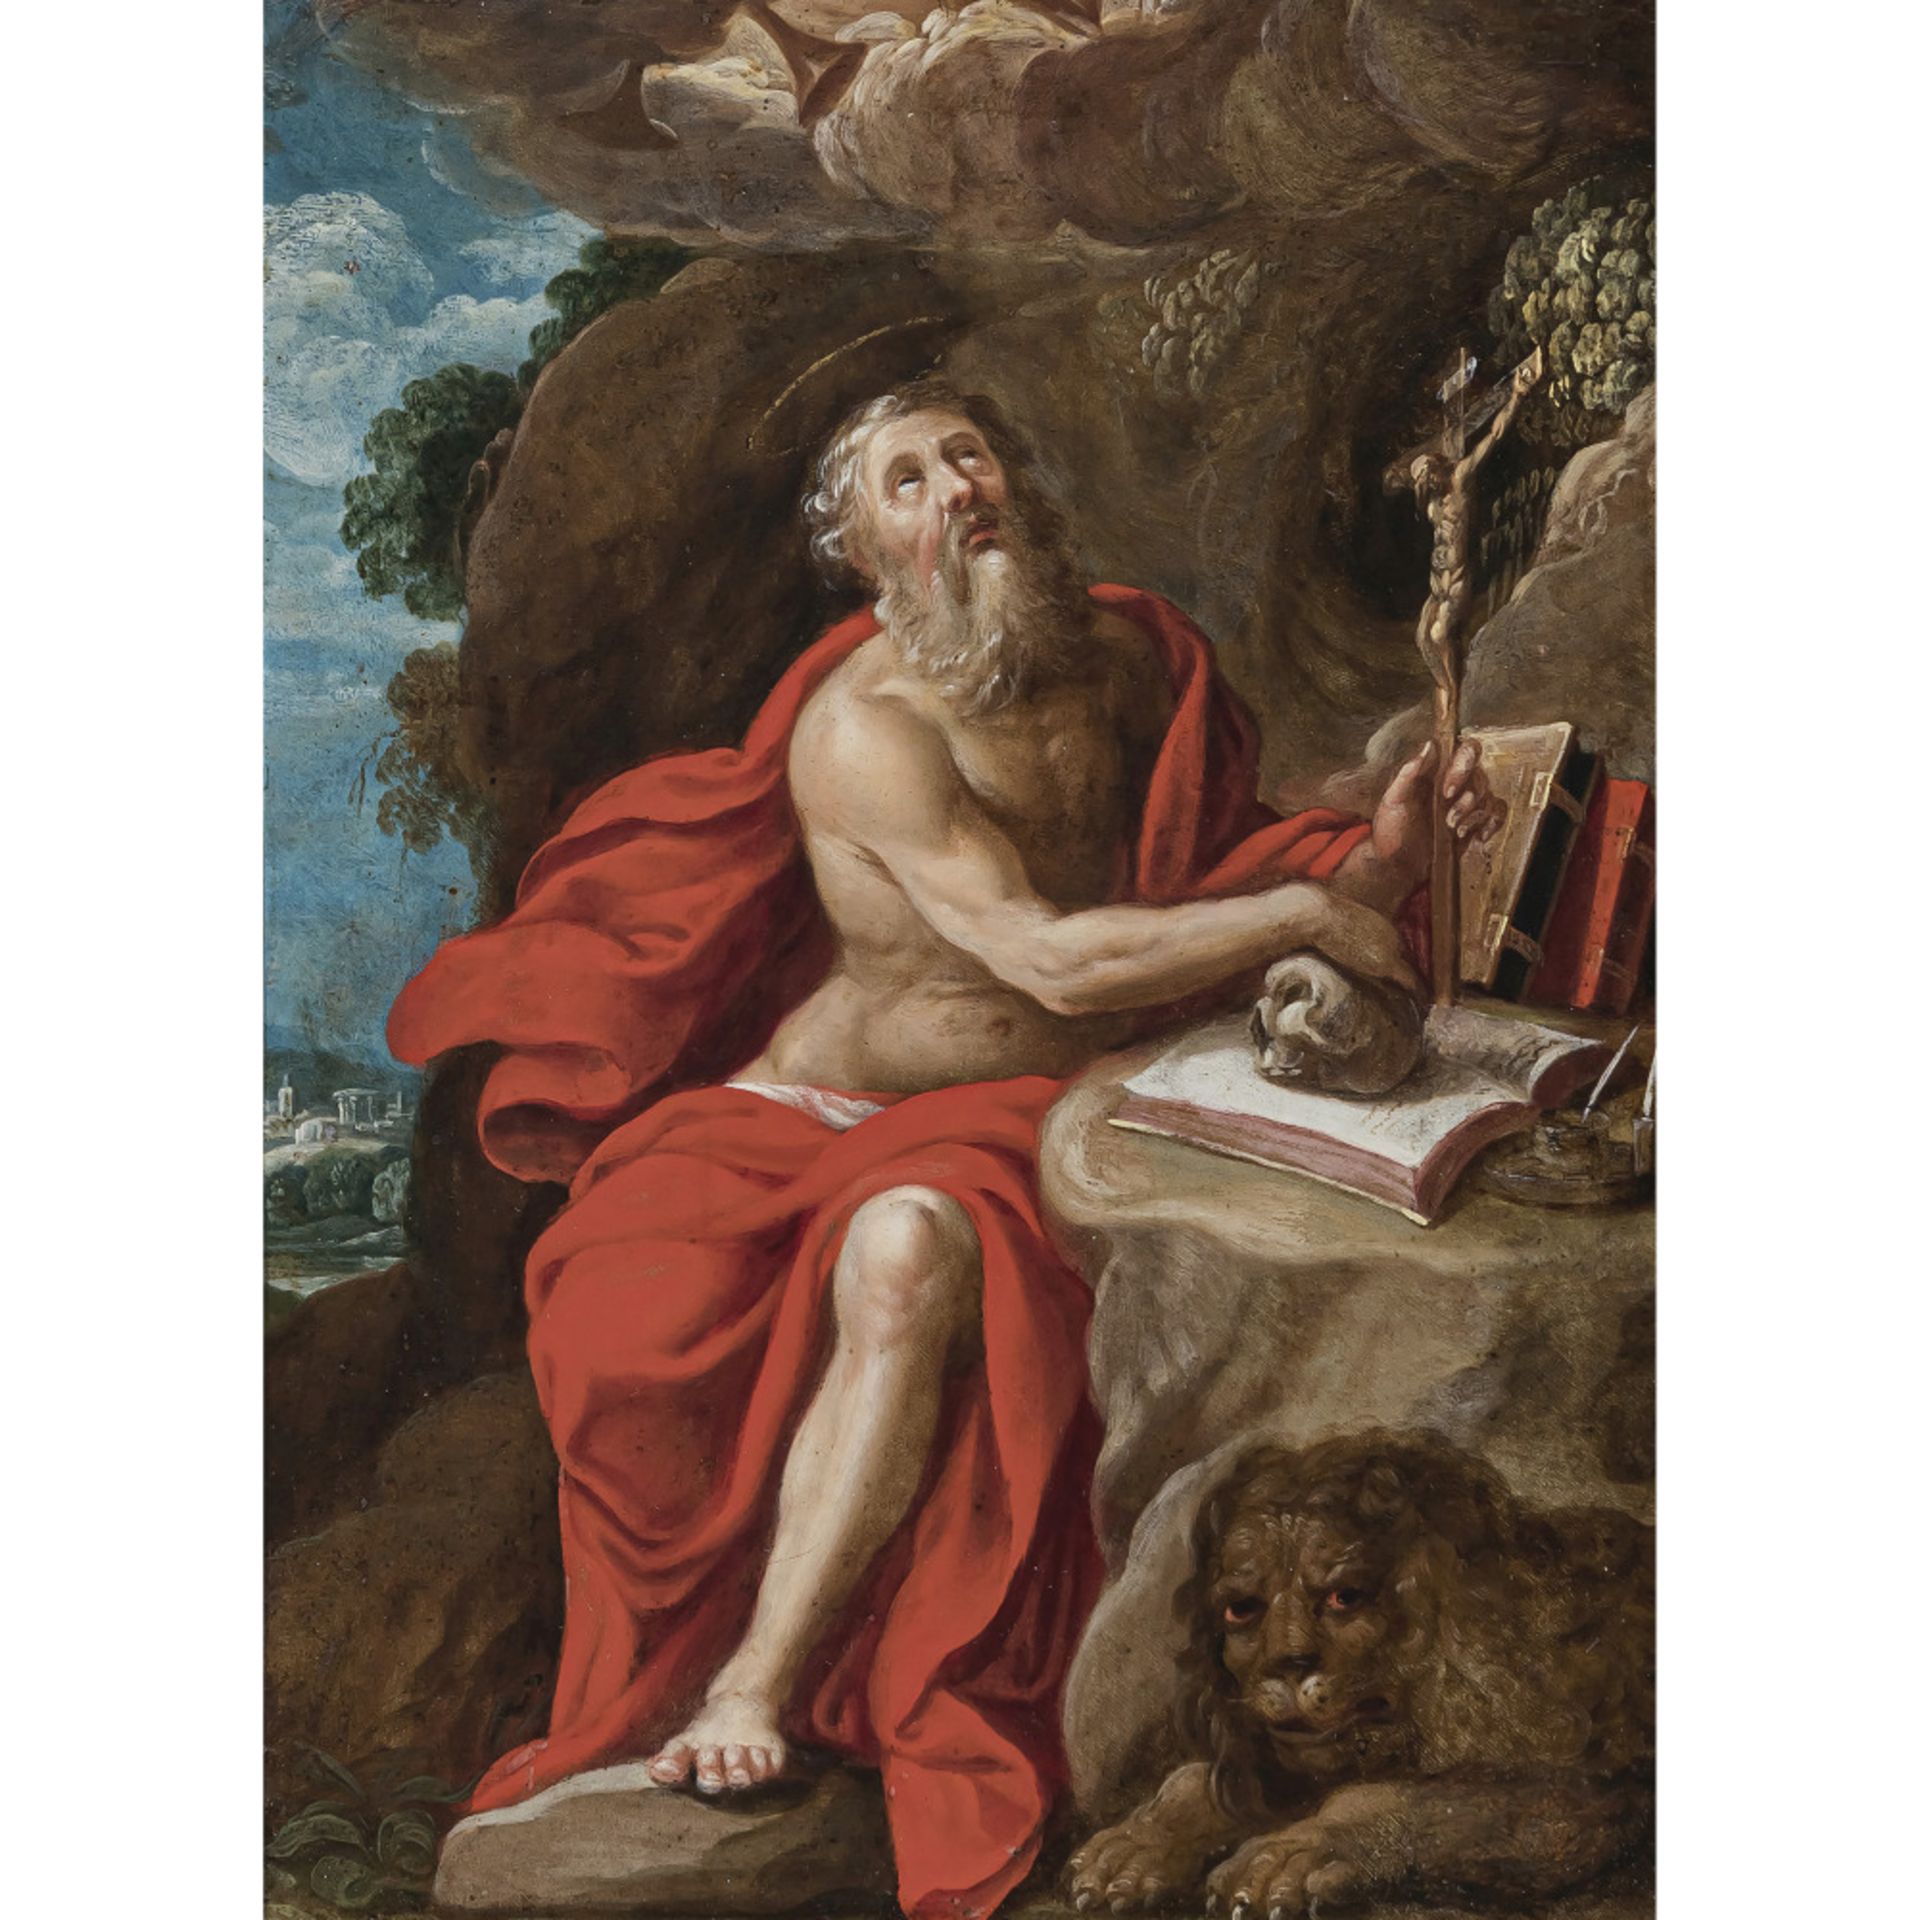 Italien (?) 17th century - Saint Jerome